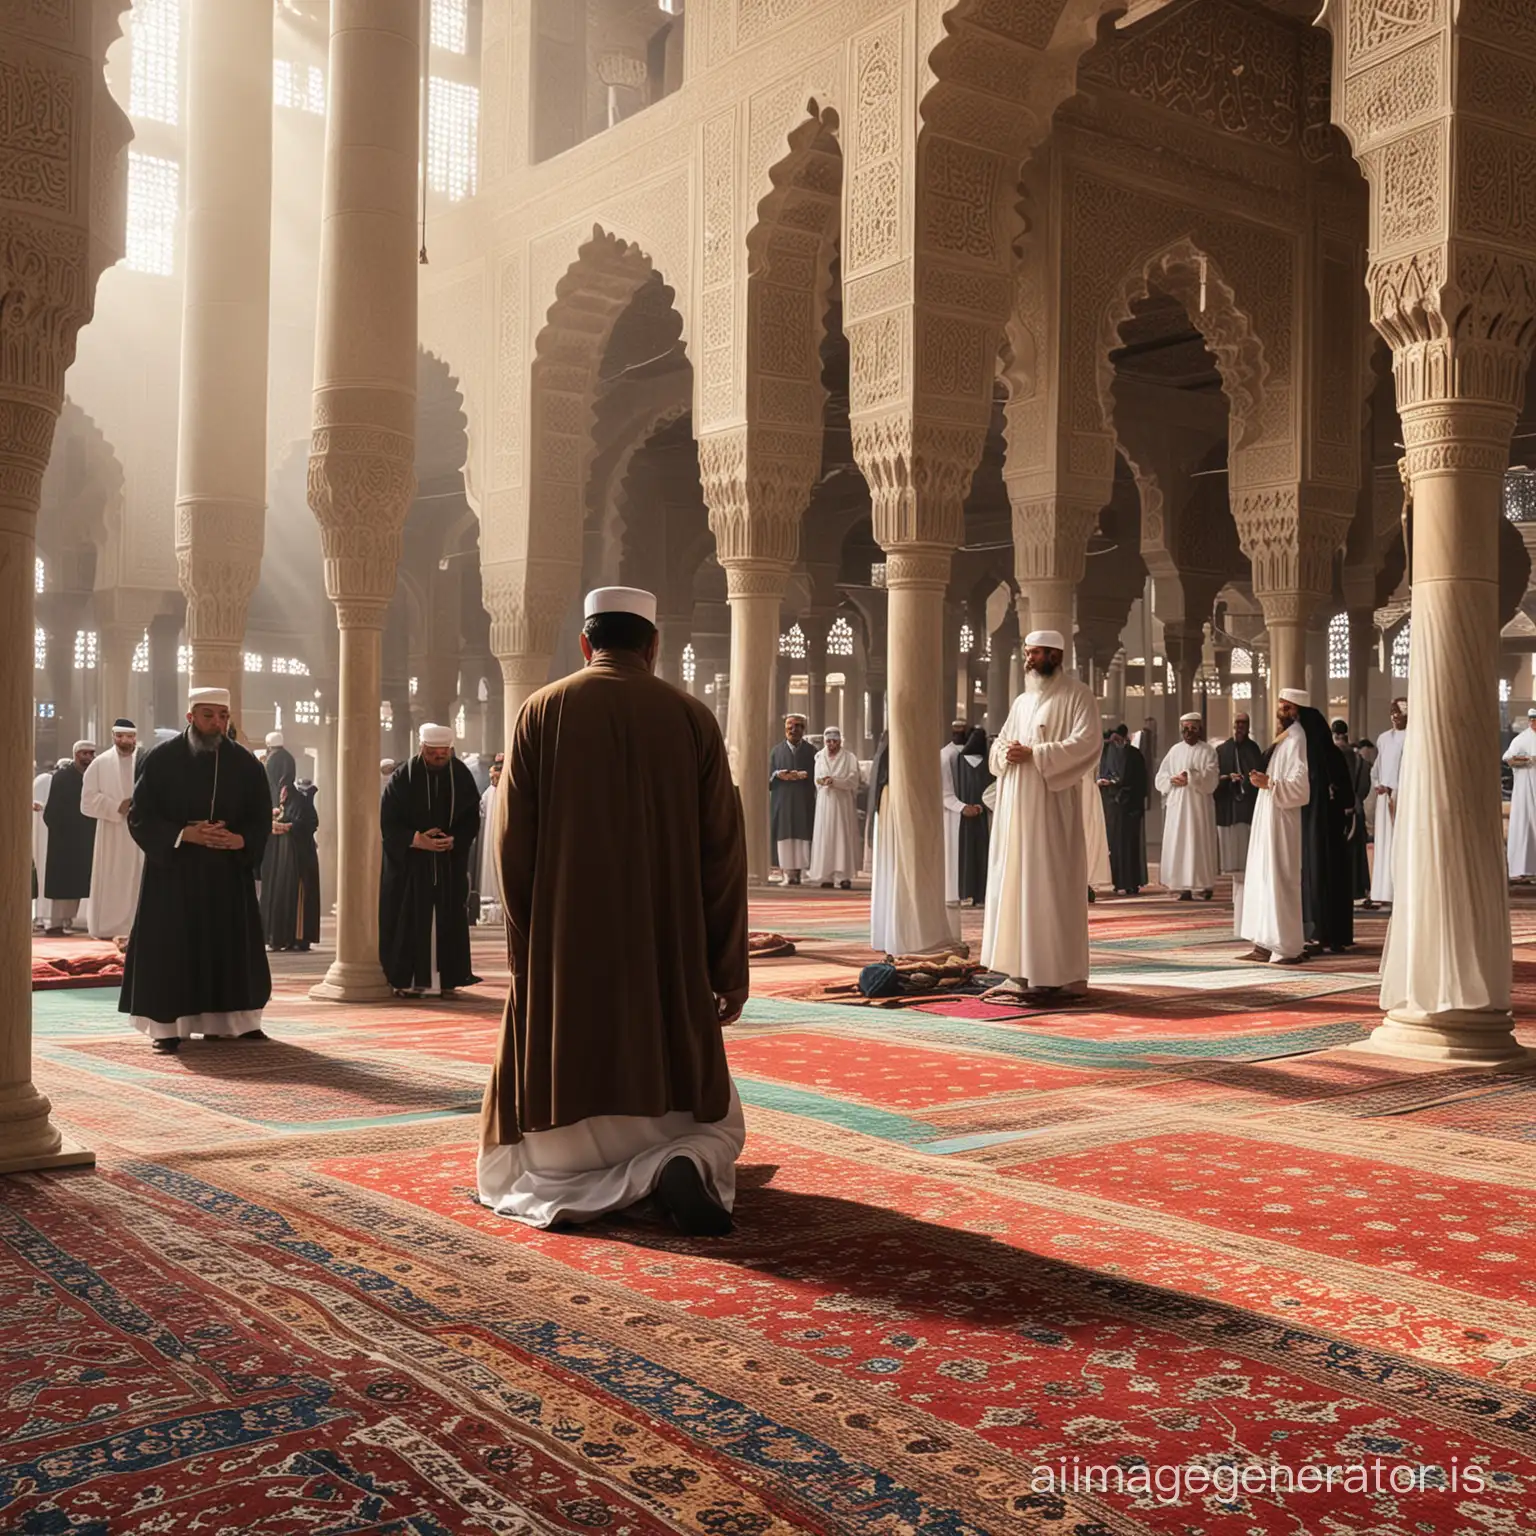 Muslim-King-Praying-in-an-Ornate-Mosque